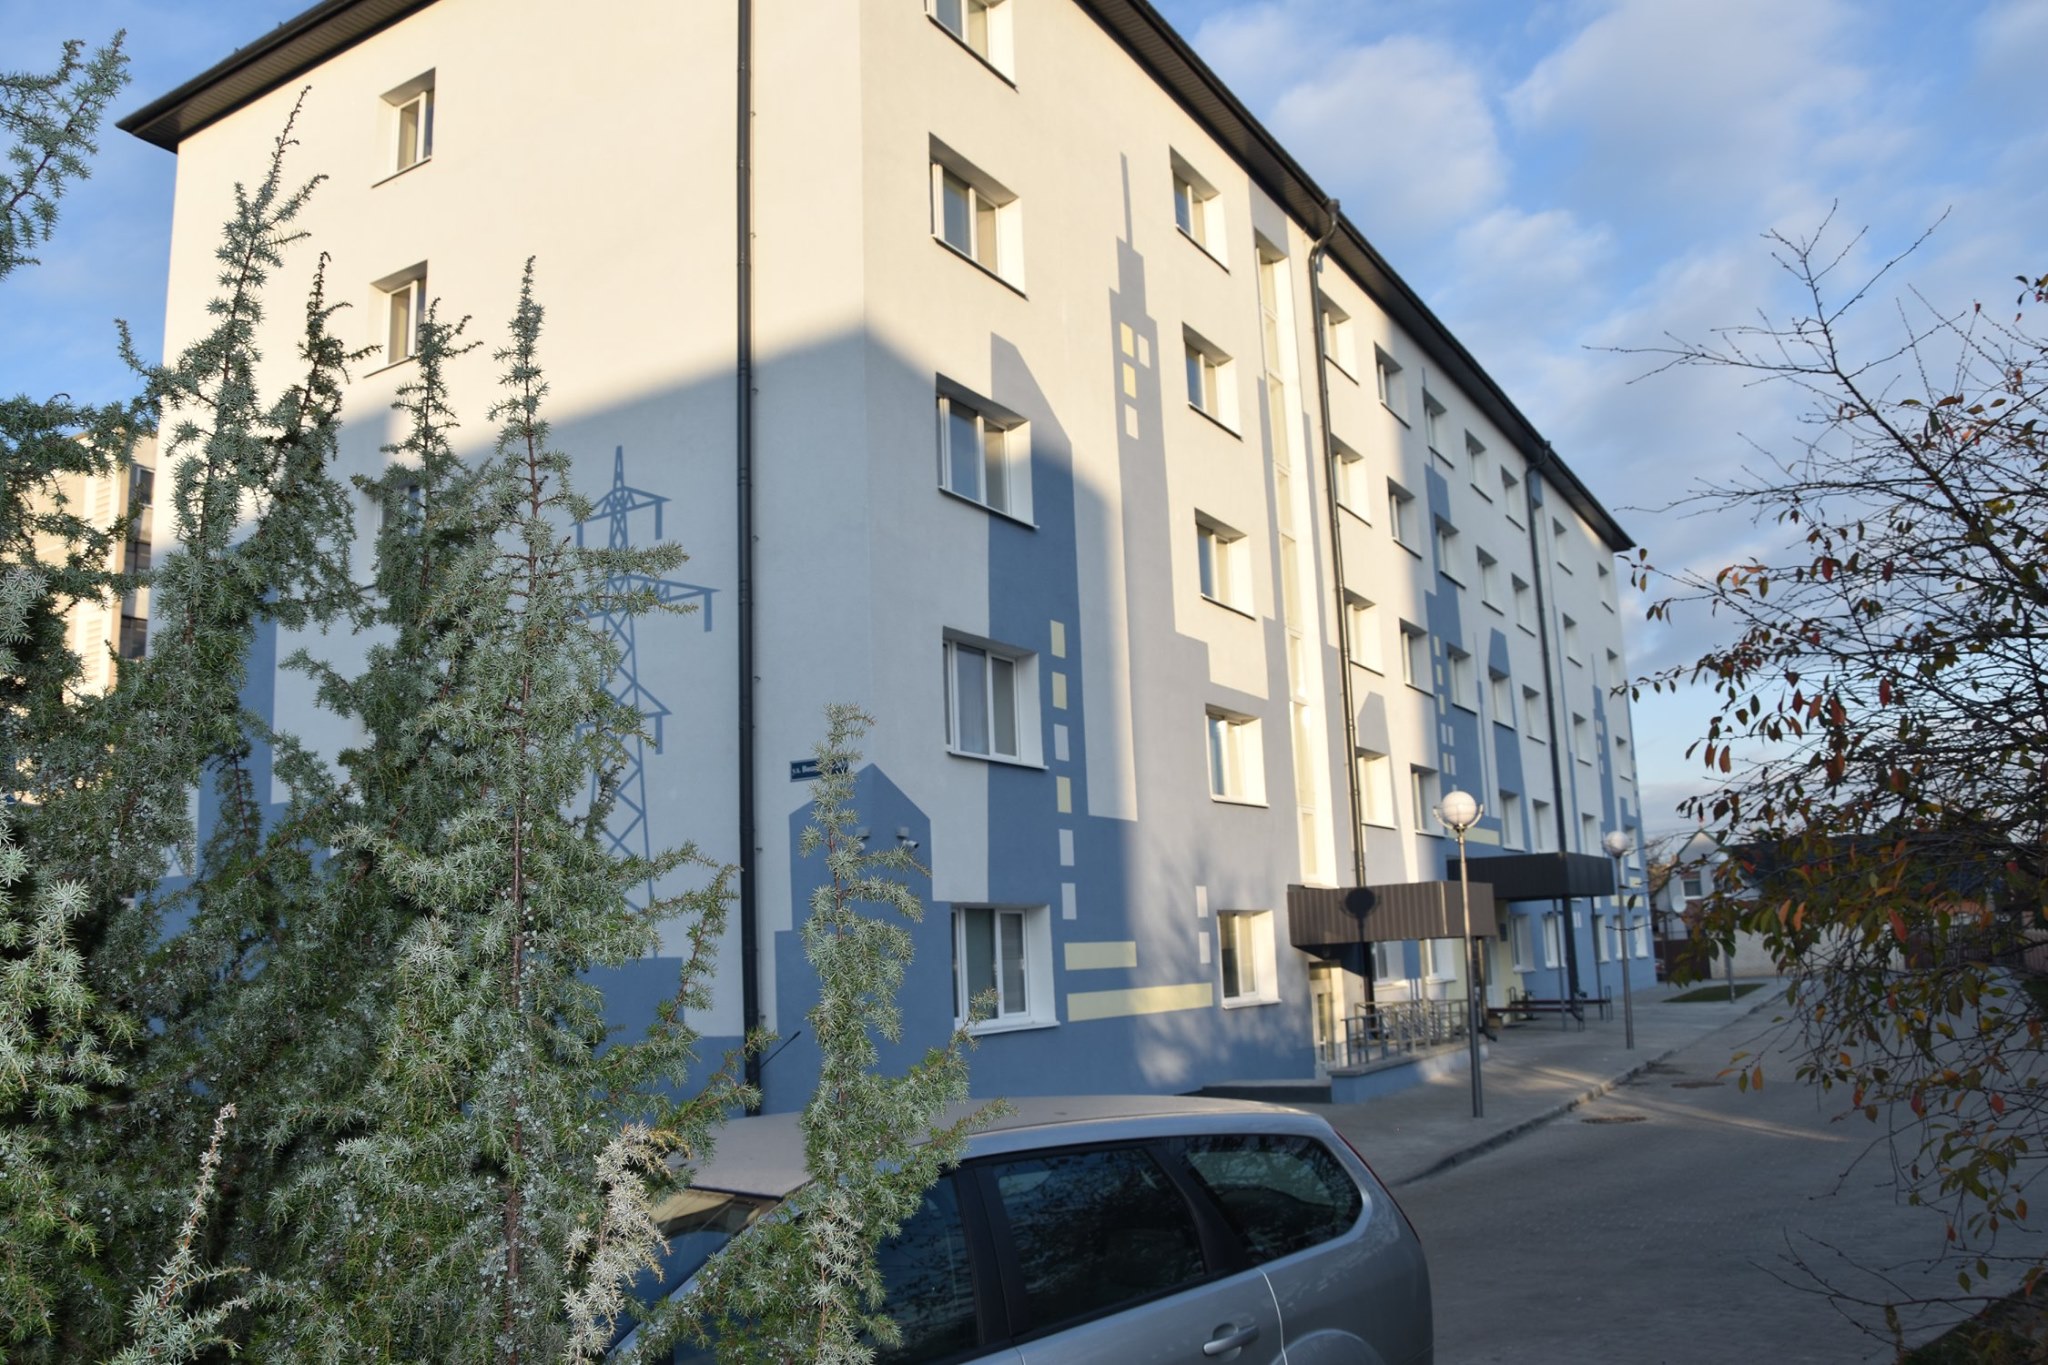 Общежитие №1 филиала «Брестские тепловые сети» РУП «Брестэнерго» предоставляет комнаты для краткосрочного проживания граждан.